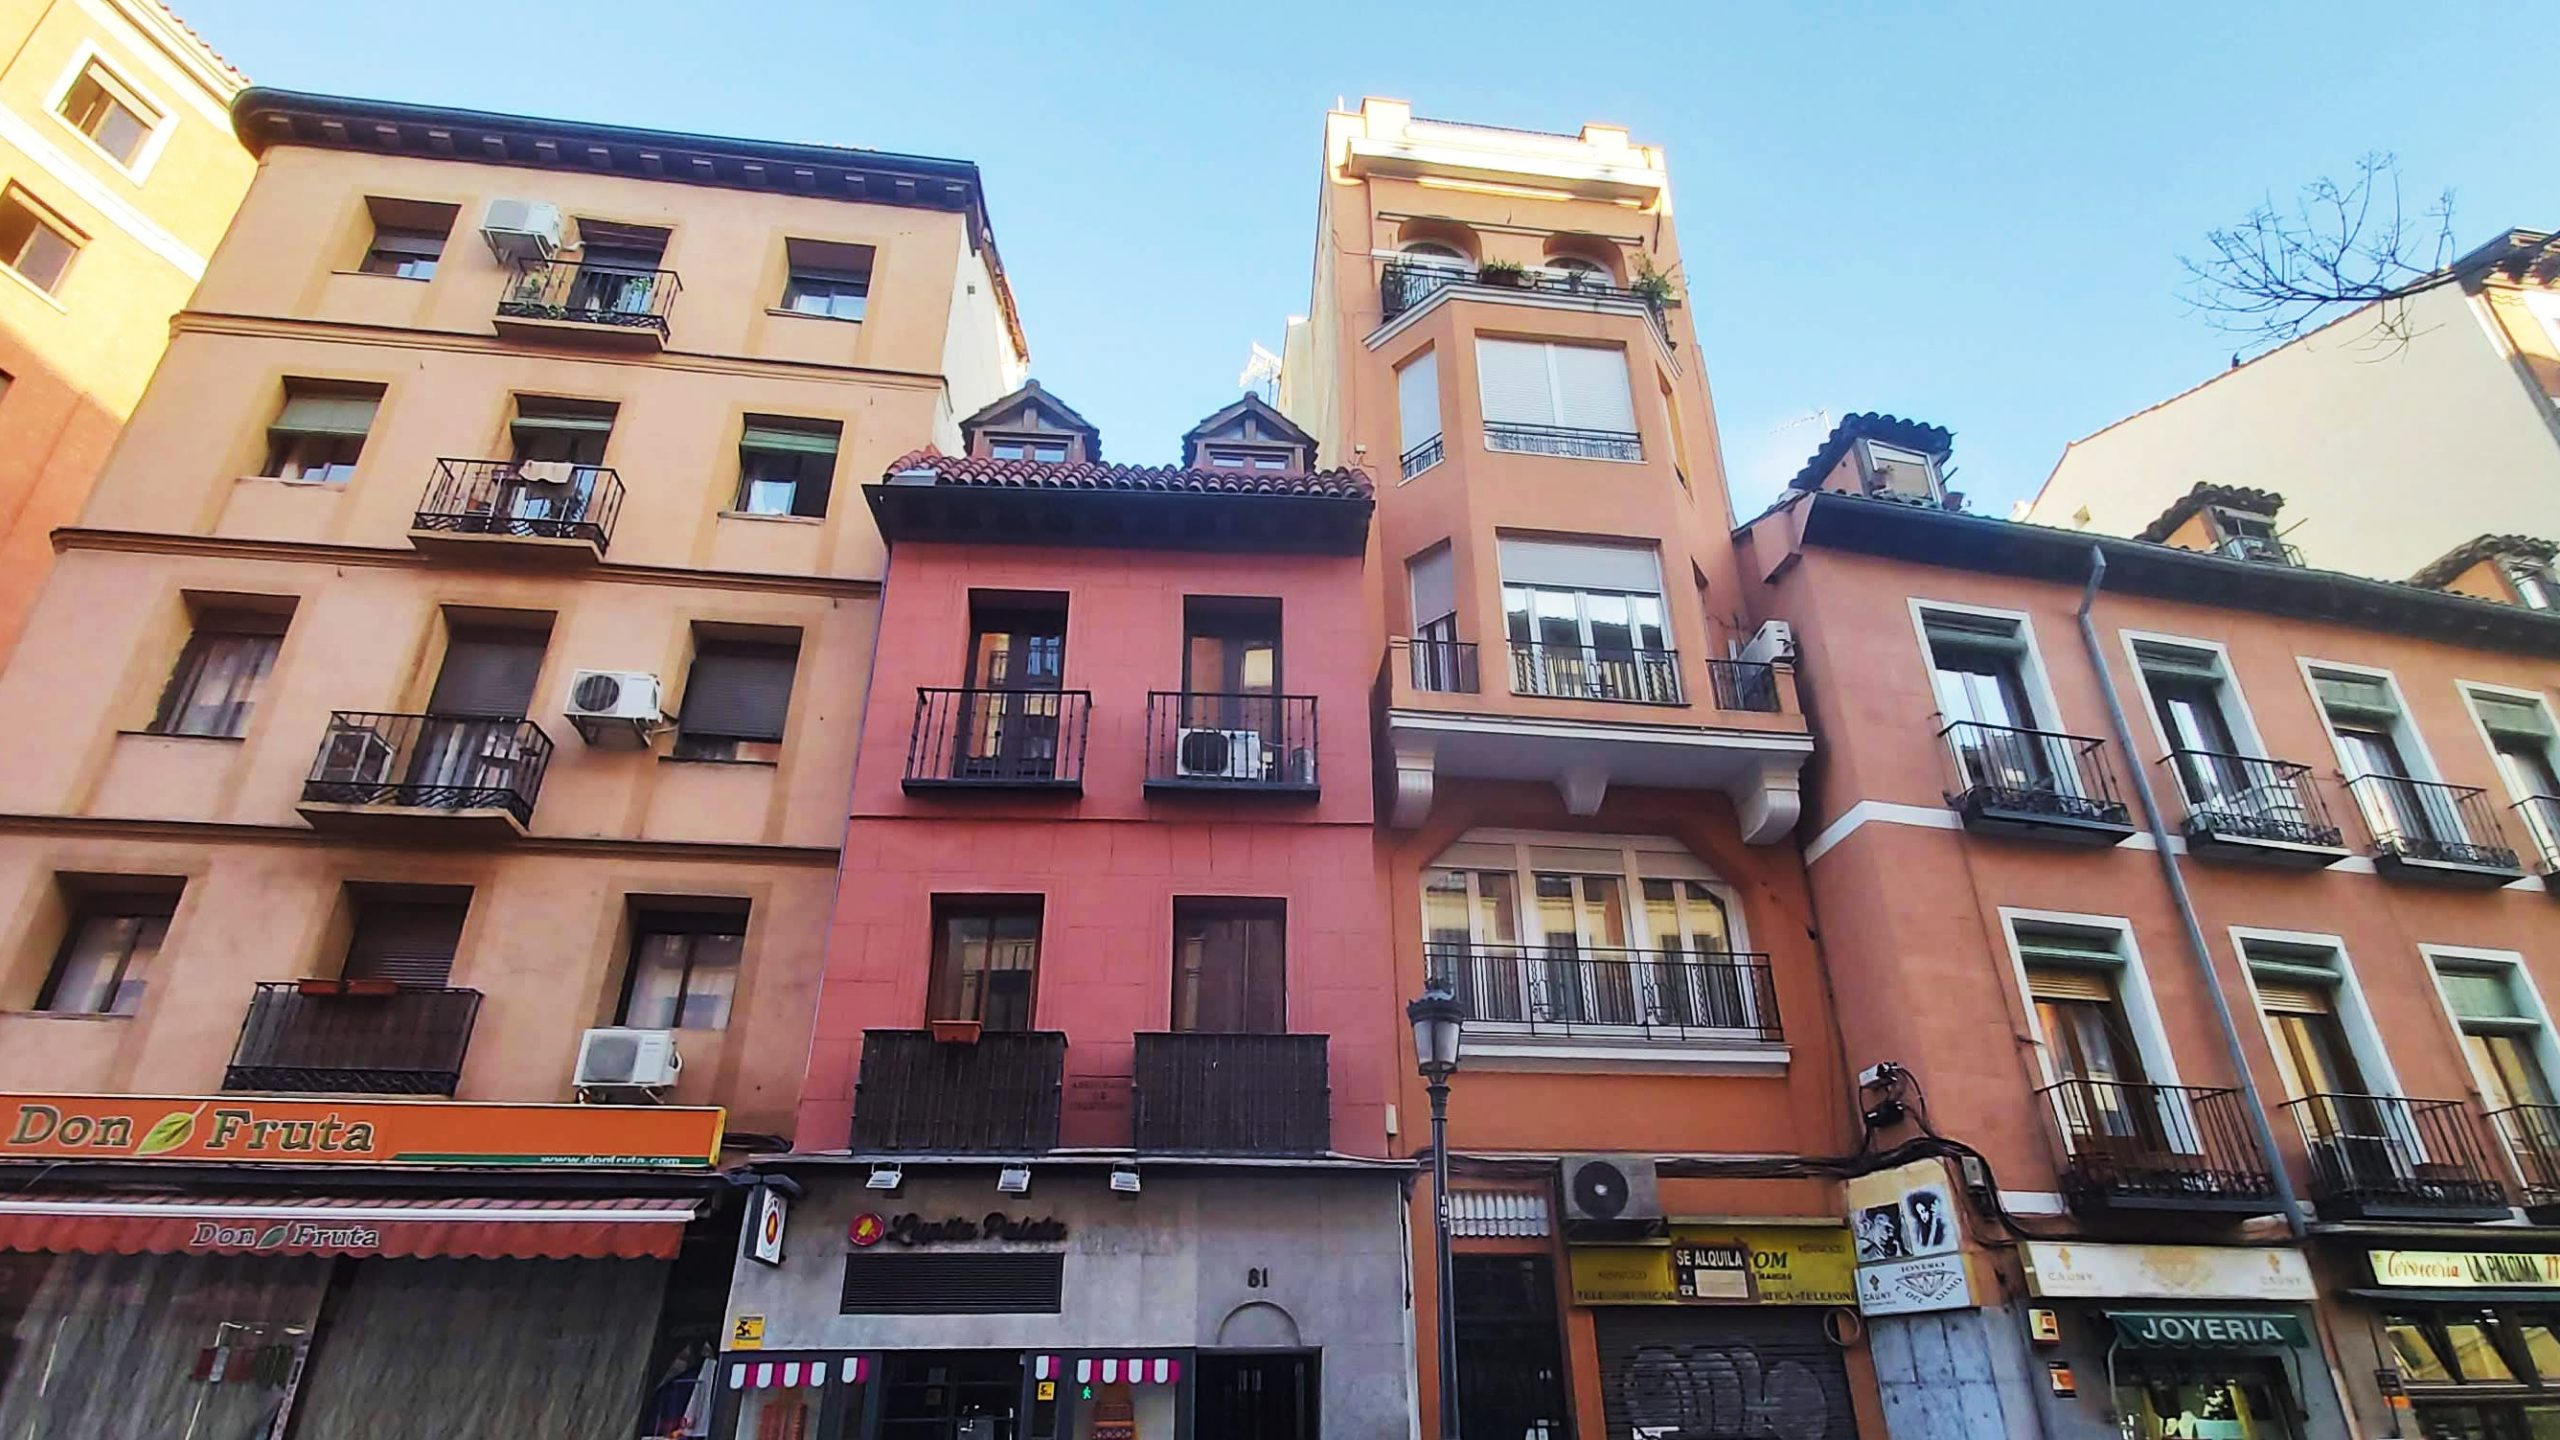 cado en la parte suroeste del distrito Centro, La Latina es uno de los barrios más antiguos (y guays) de Madrid.